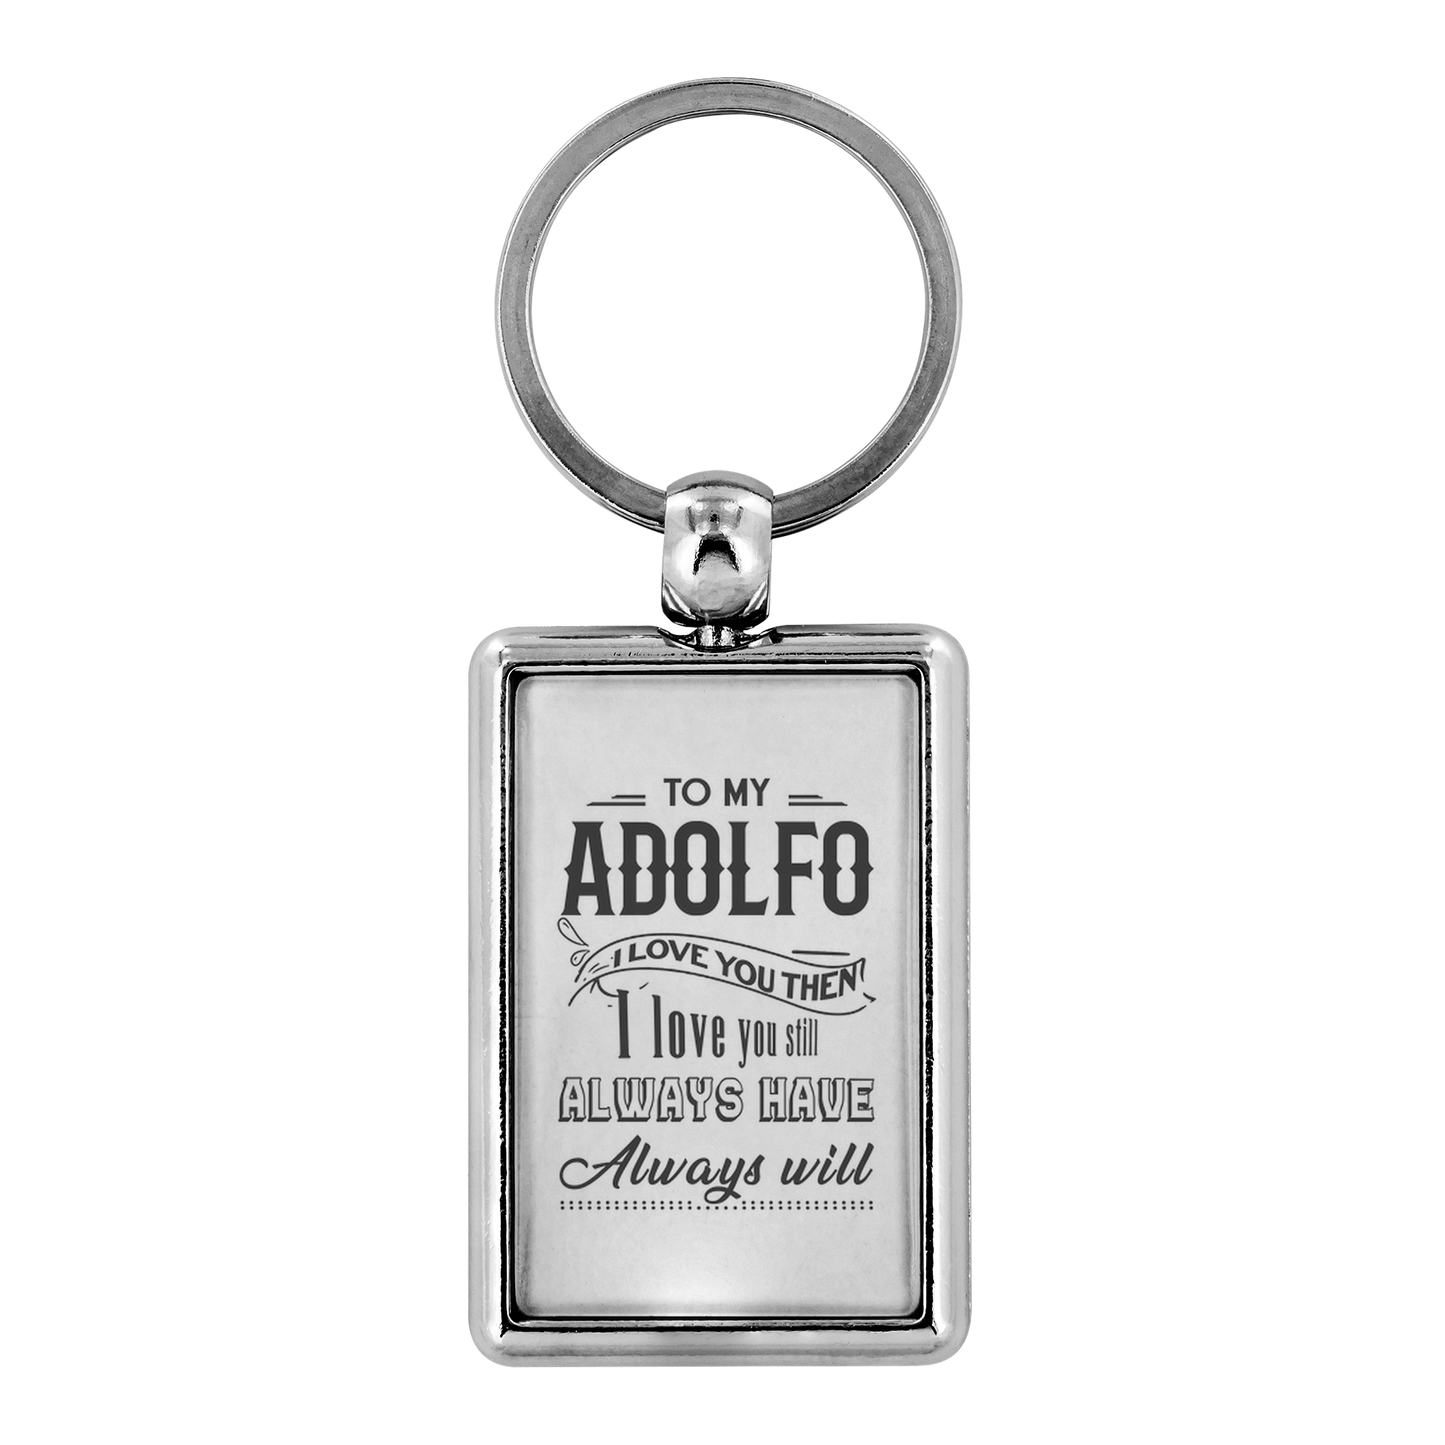 KC-21245188-sp-22443 - Keychain For Boyfriend With Name Adolfo - To My Adolfo I Lov